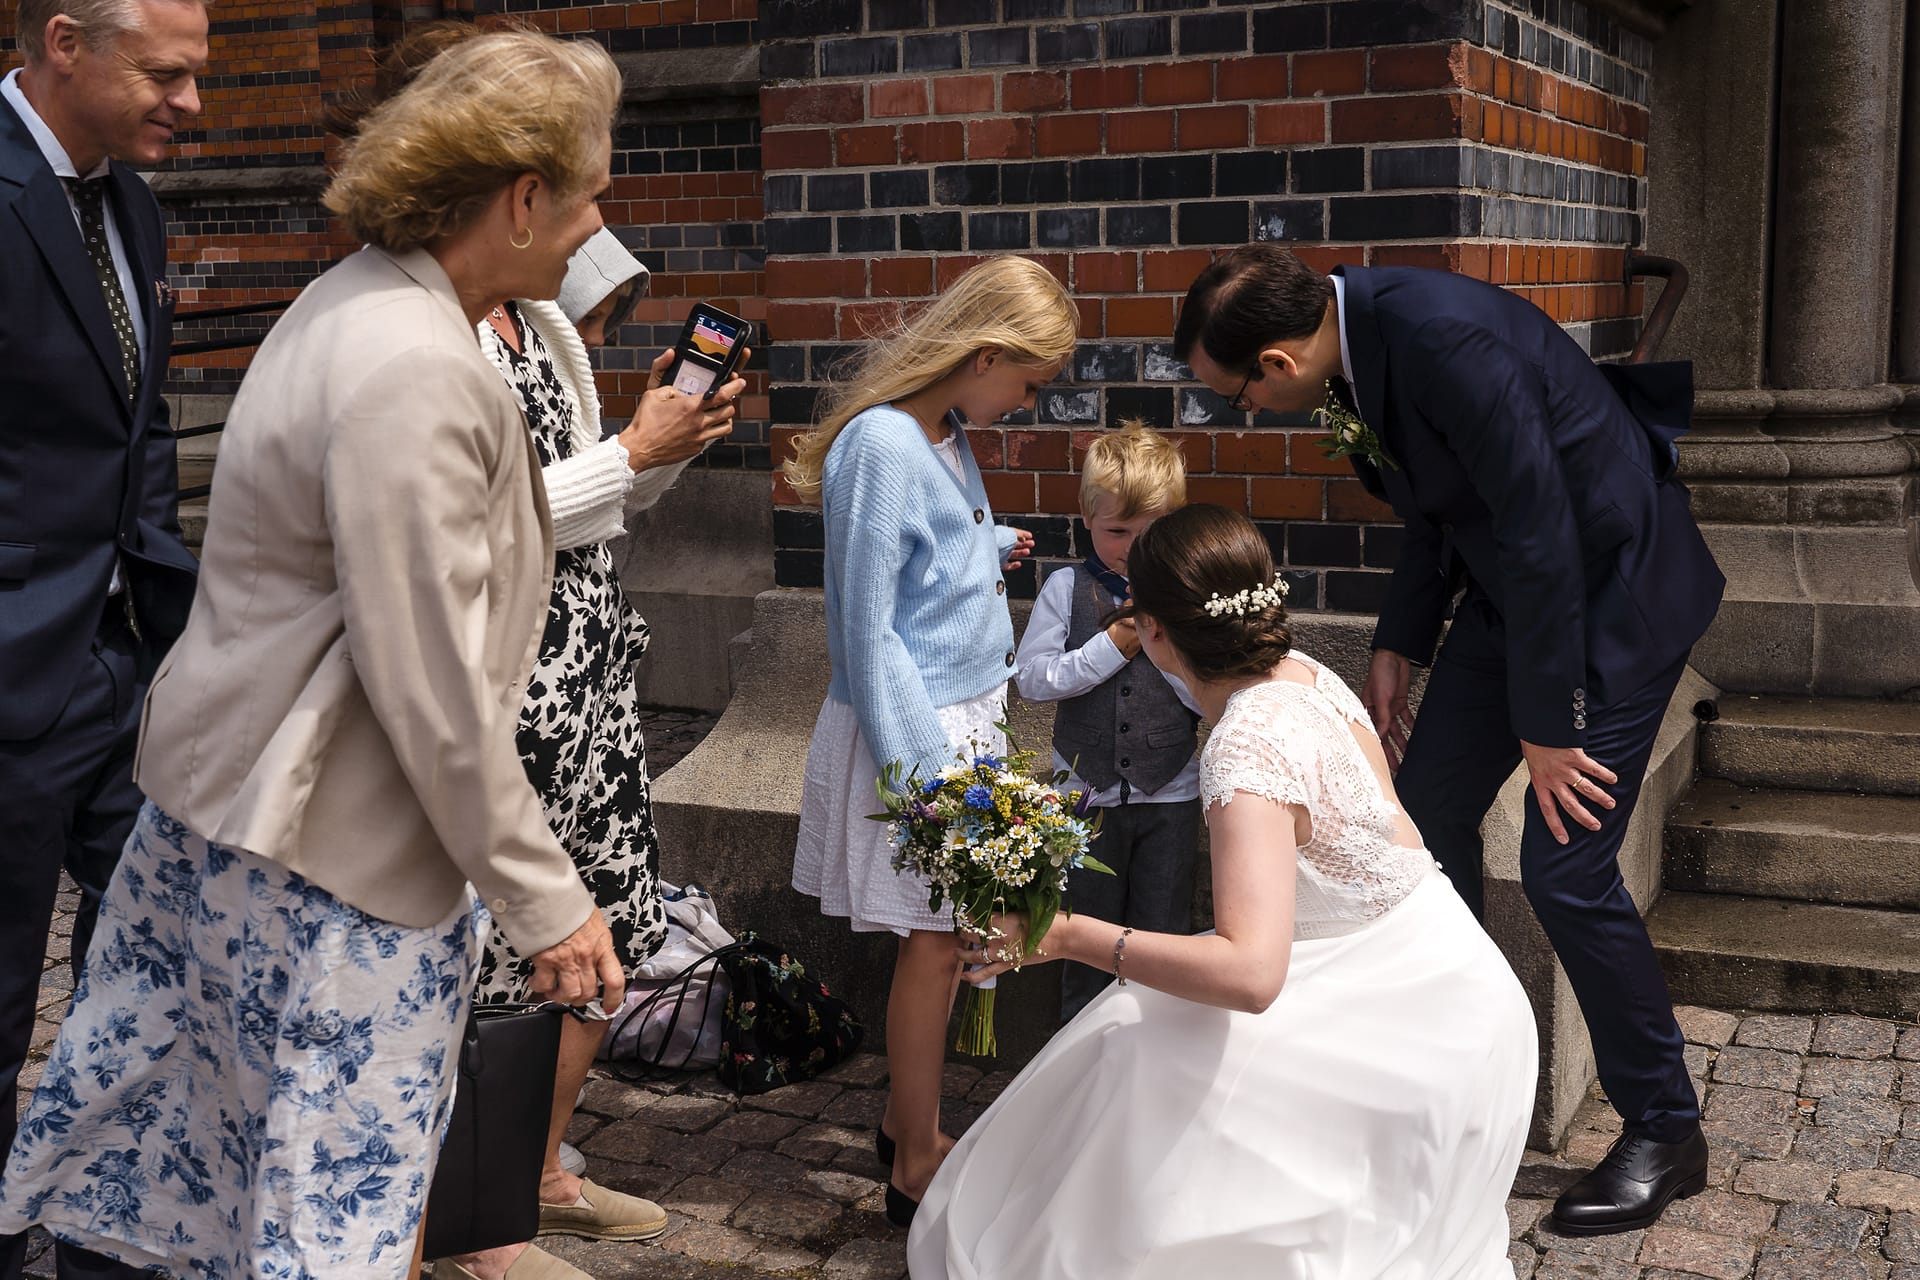 Bröllop ceremoni på Allhelgonakyrkan av Bröllopsfotograf Lund